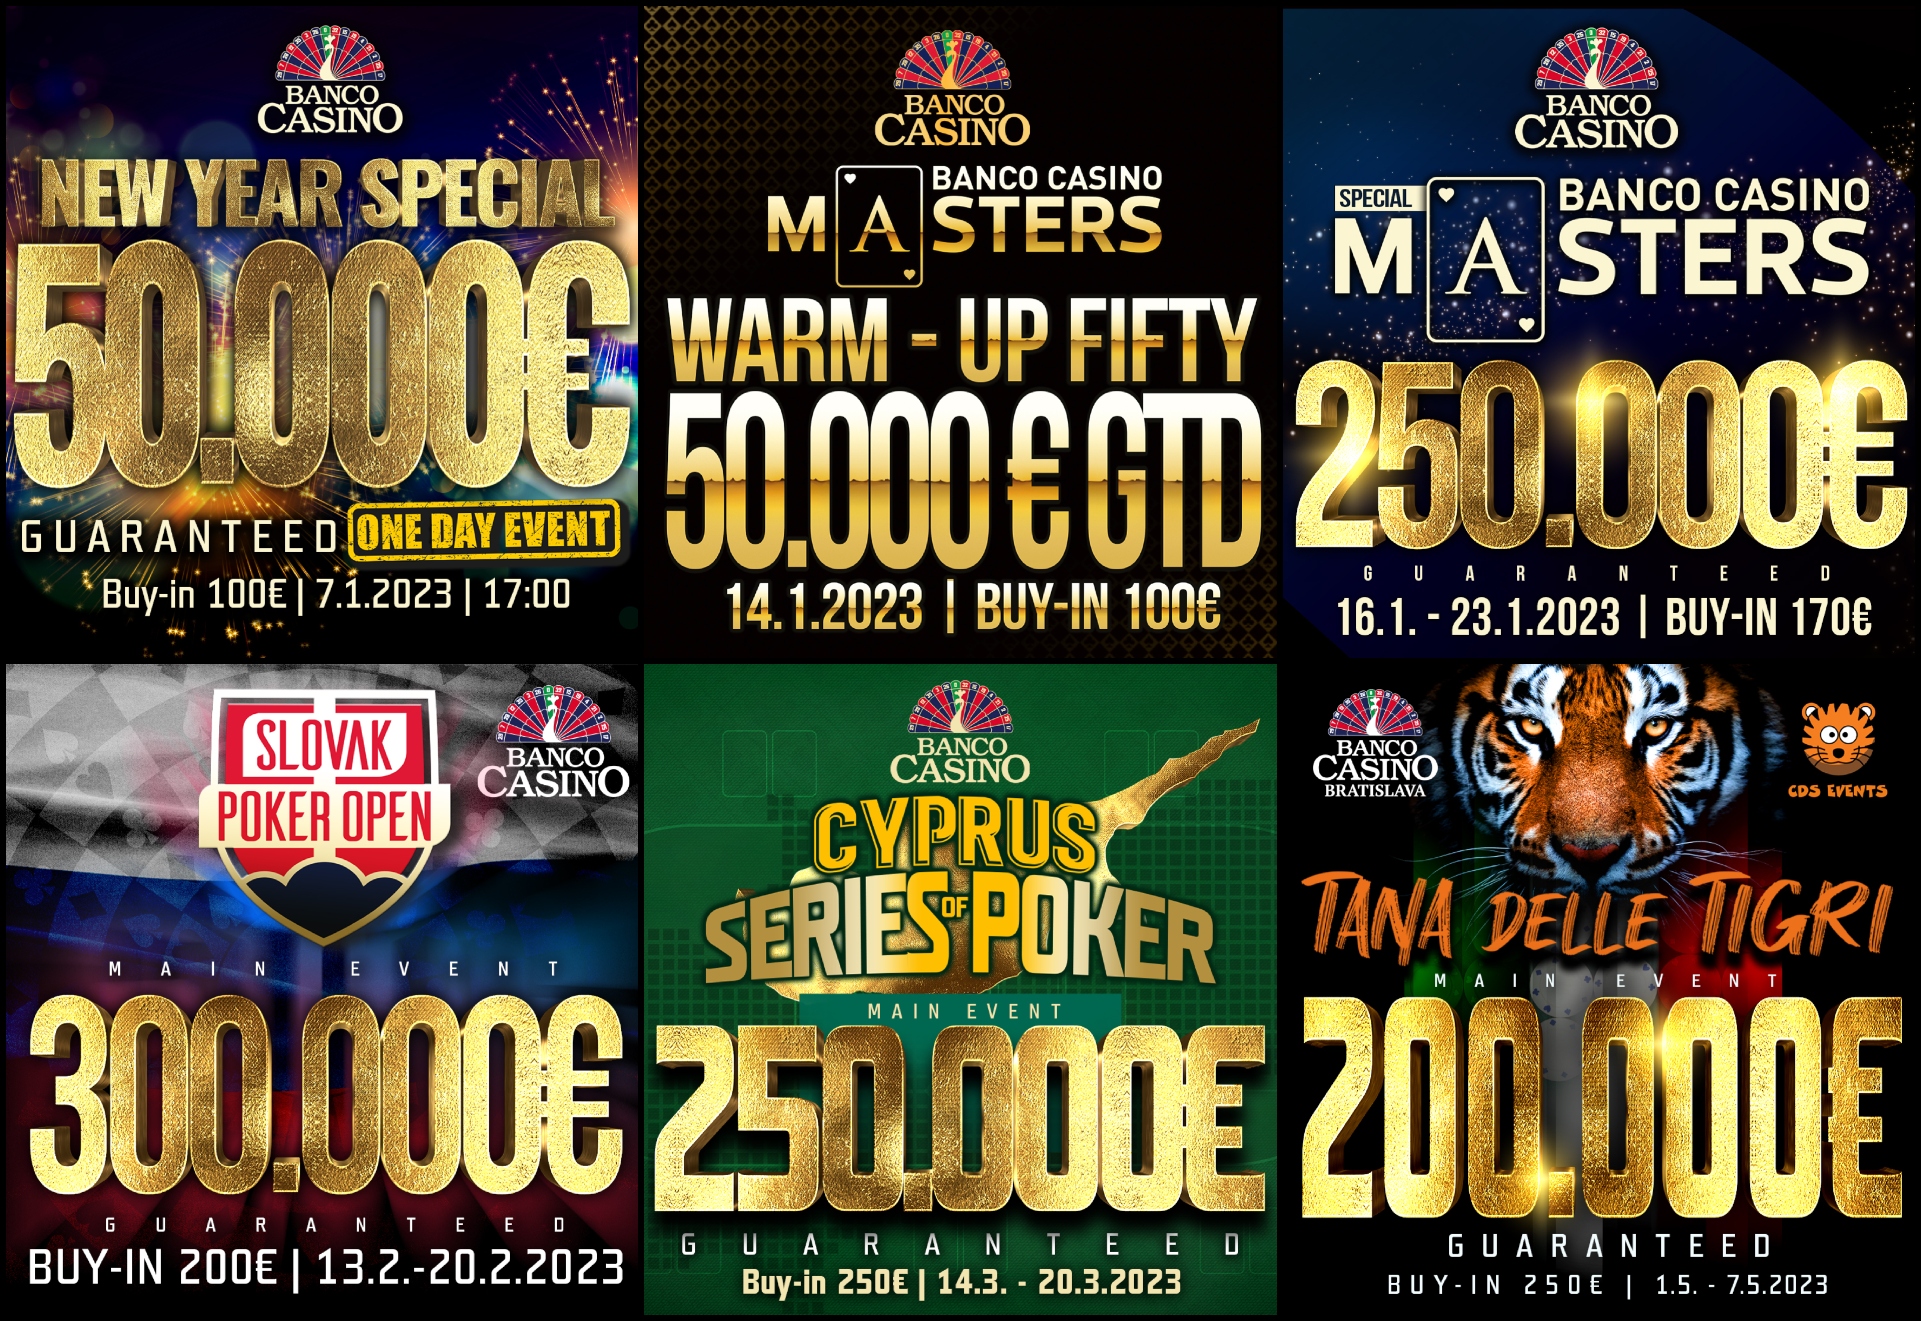 Úvodný týždeň v Banco Casino prinesie jednodňovú lahôdku 50.000€ GTD iba za 100€!